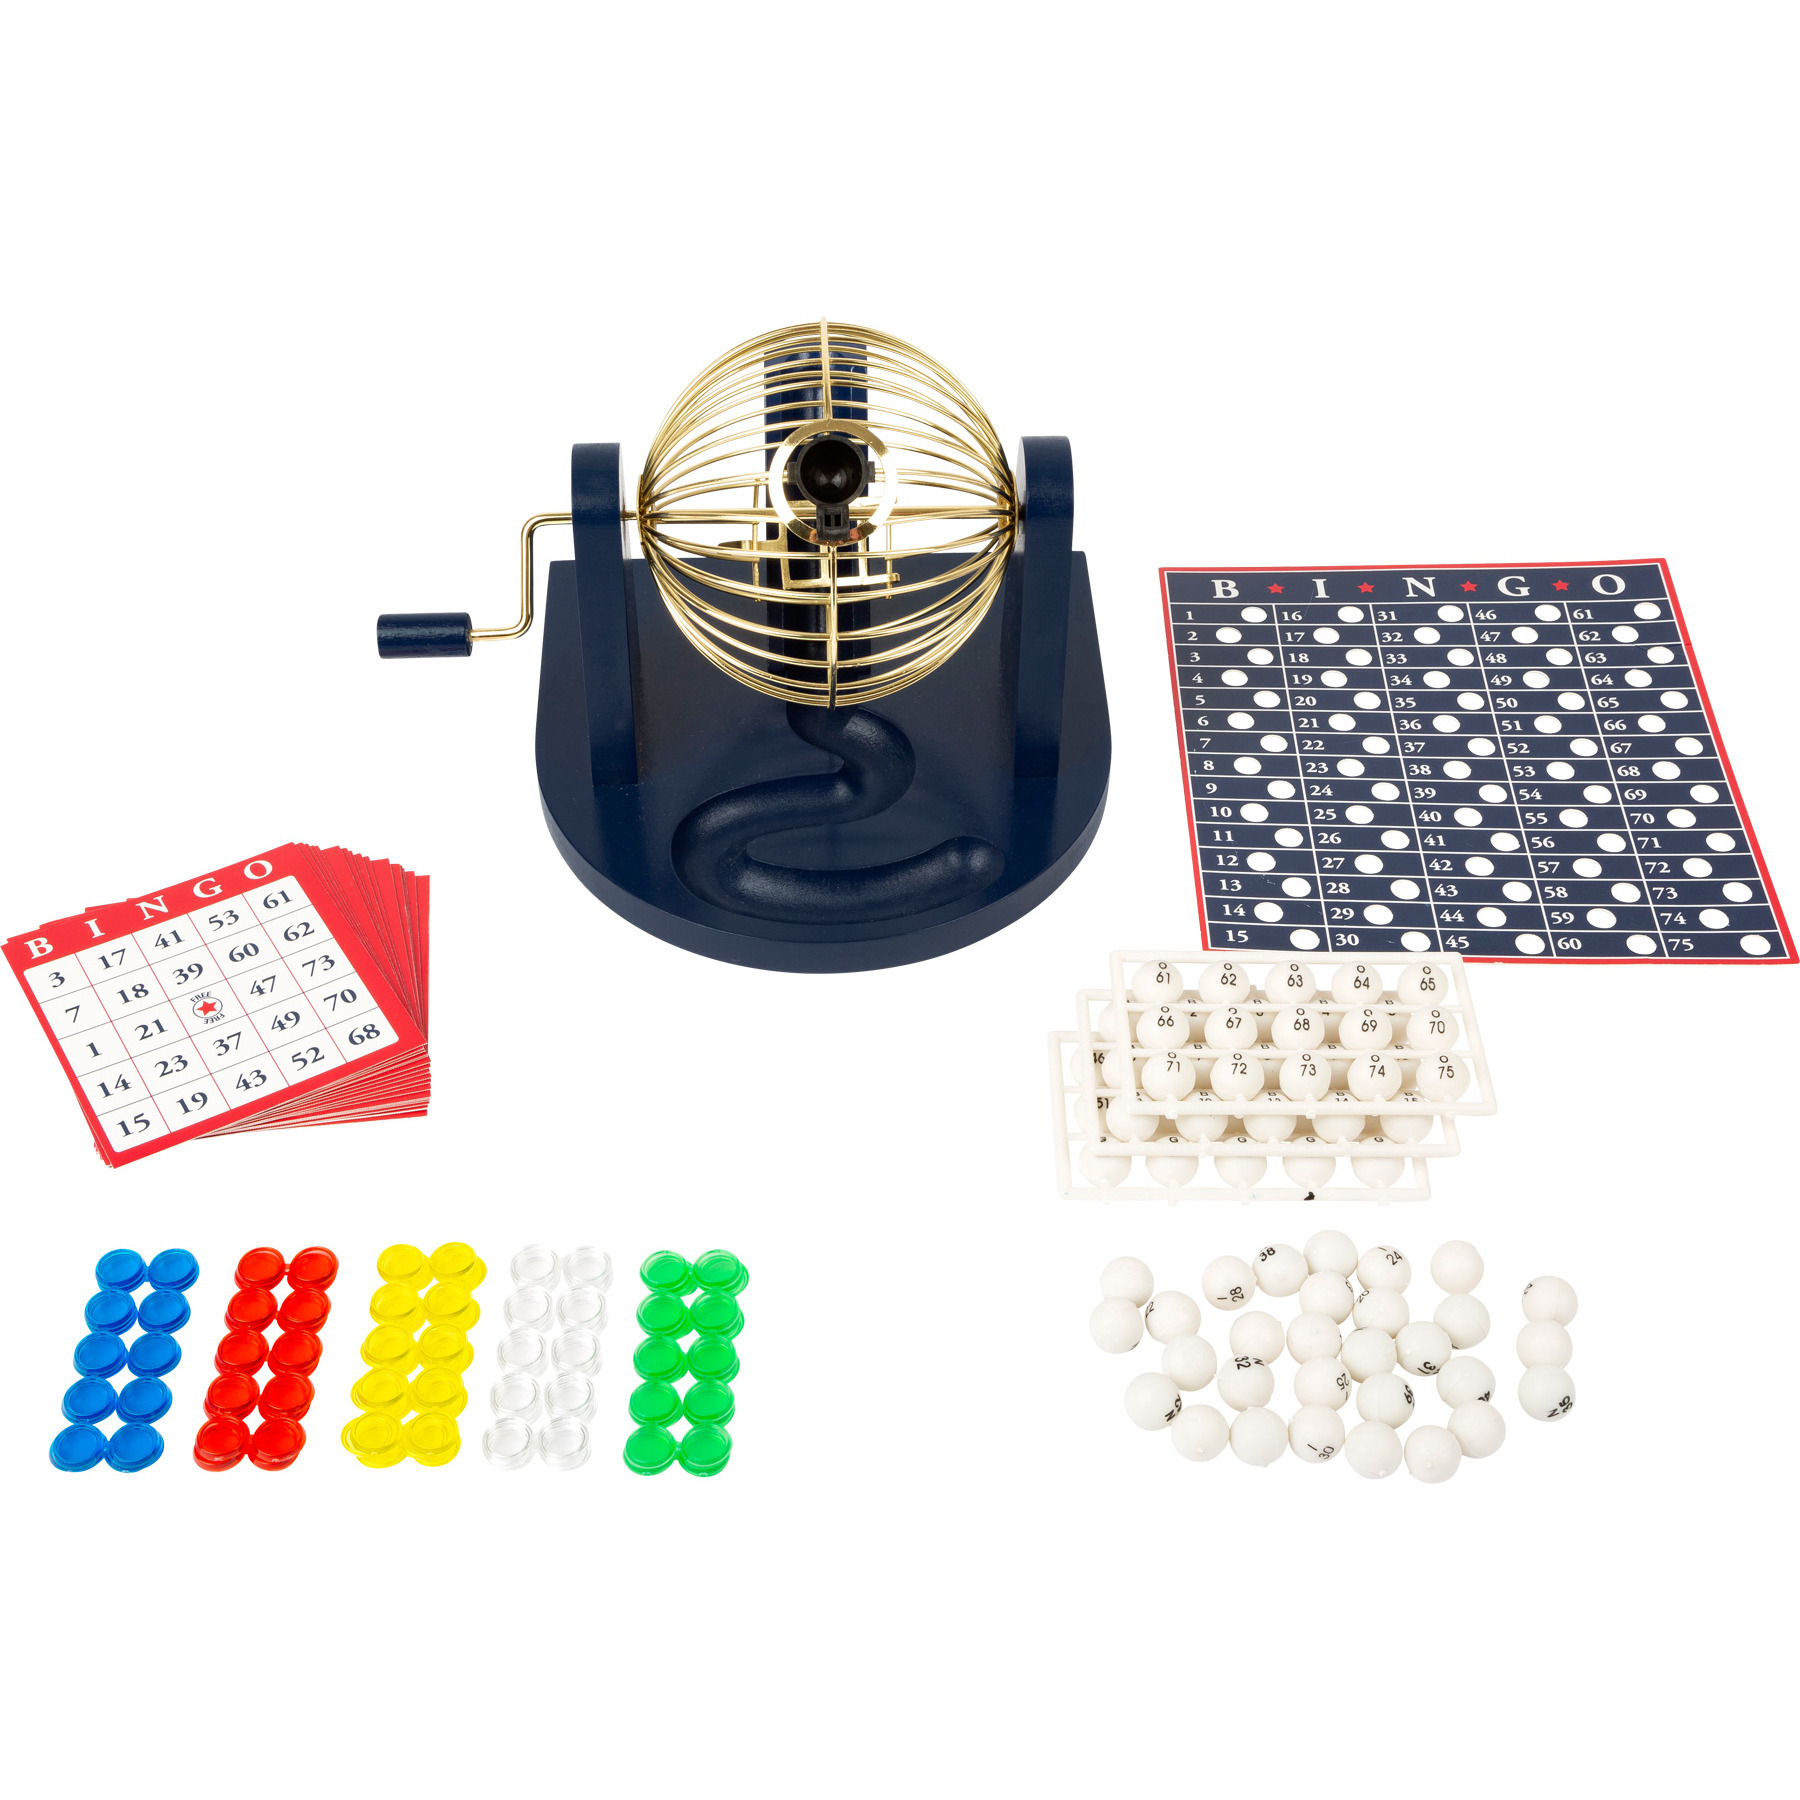 Bingospel blauw-goud-wit 1-75 met bingomolen en 17 bingokaarten